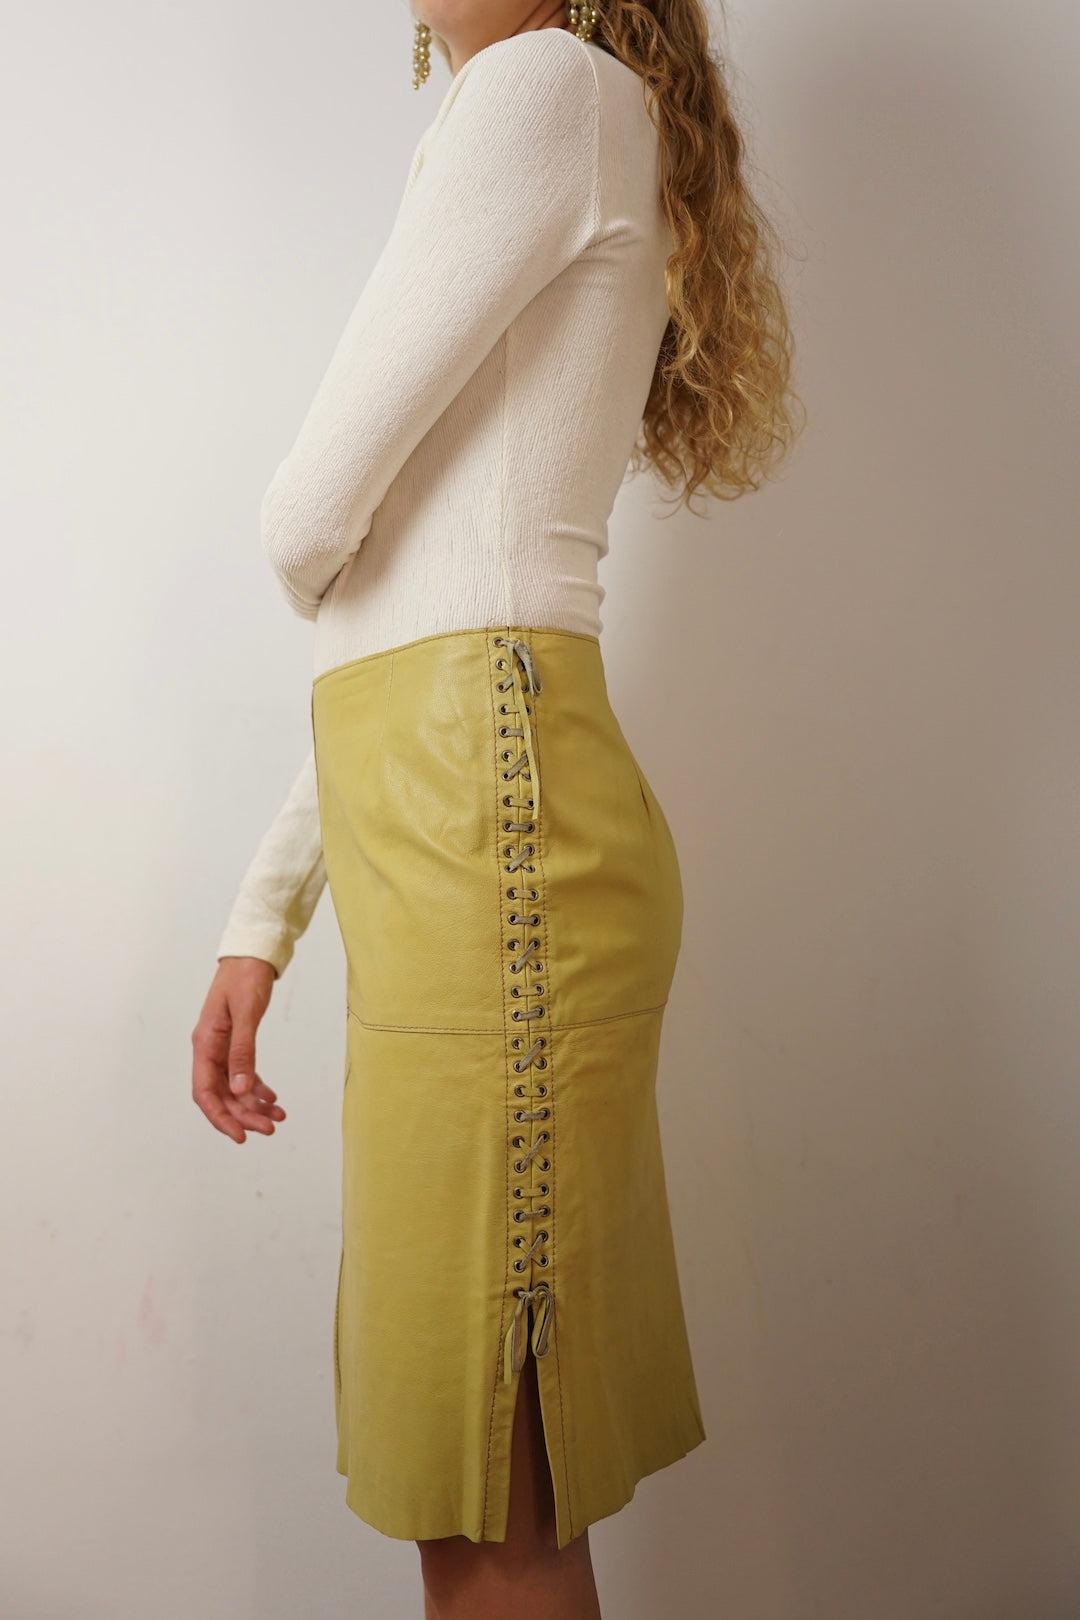 Vintage leather skirt